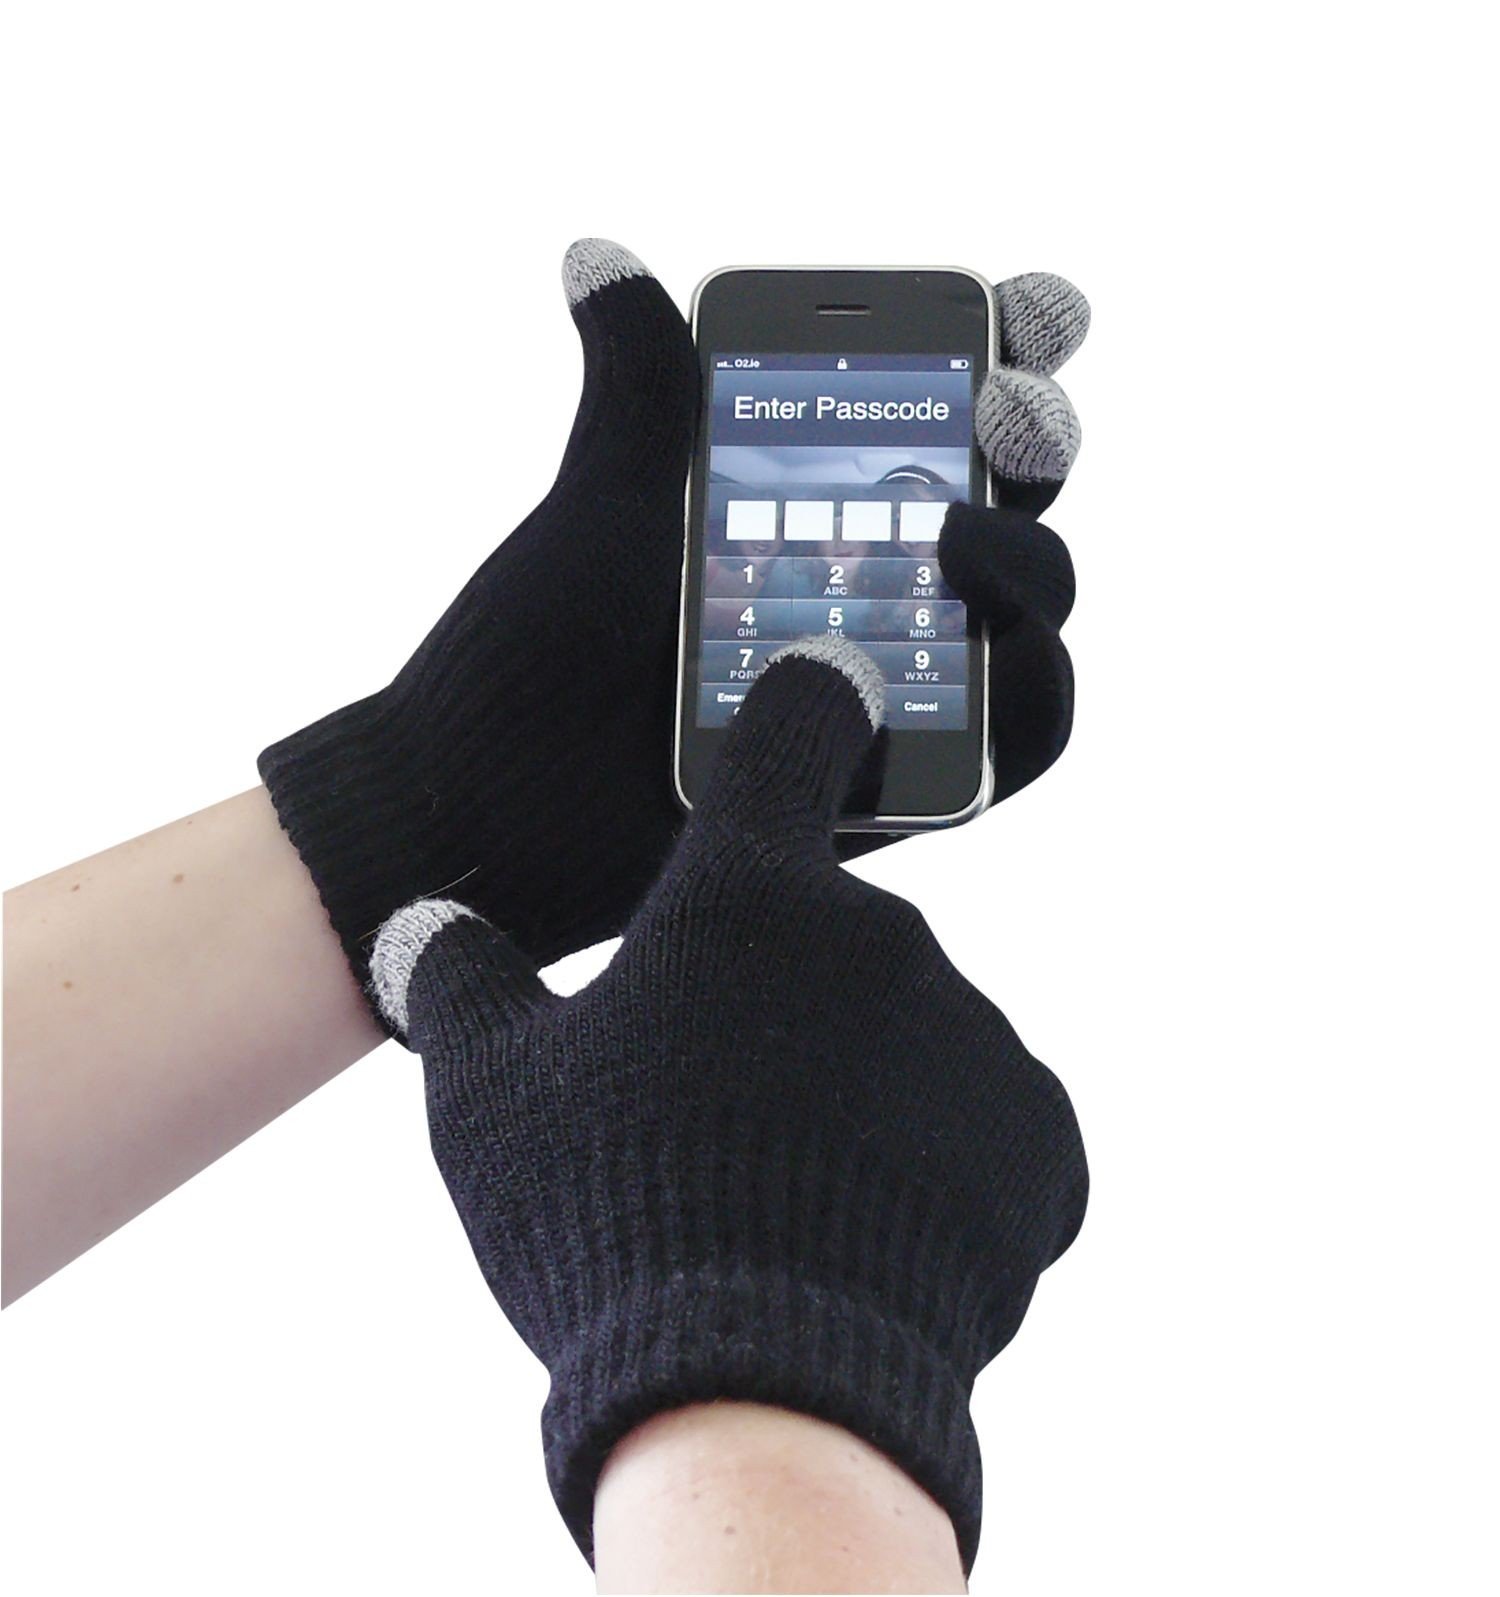 Touchscreen Knit Glove